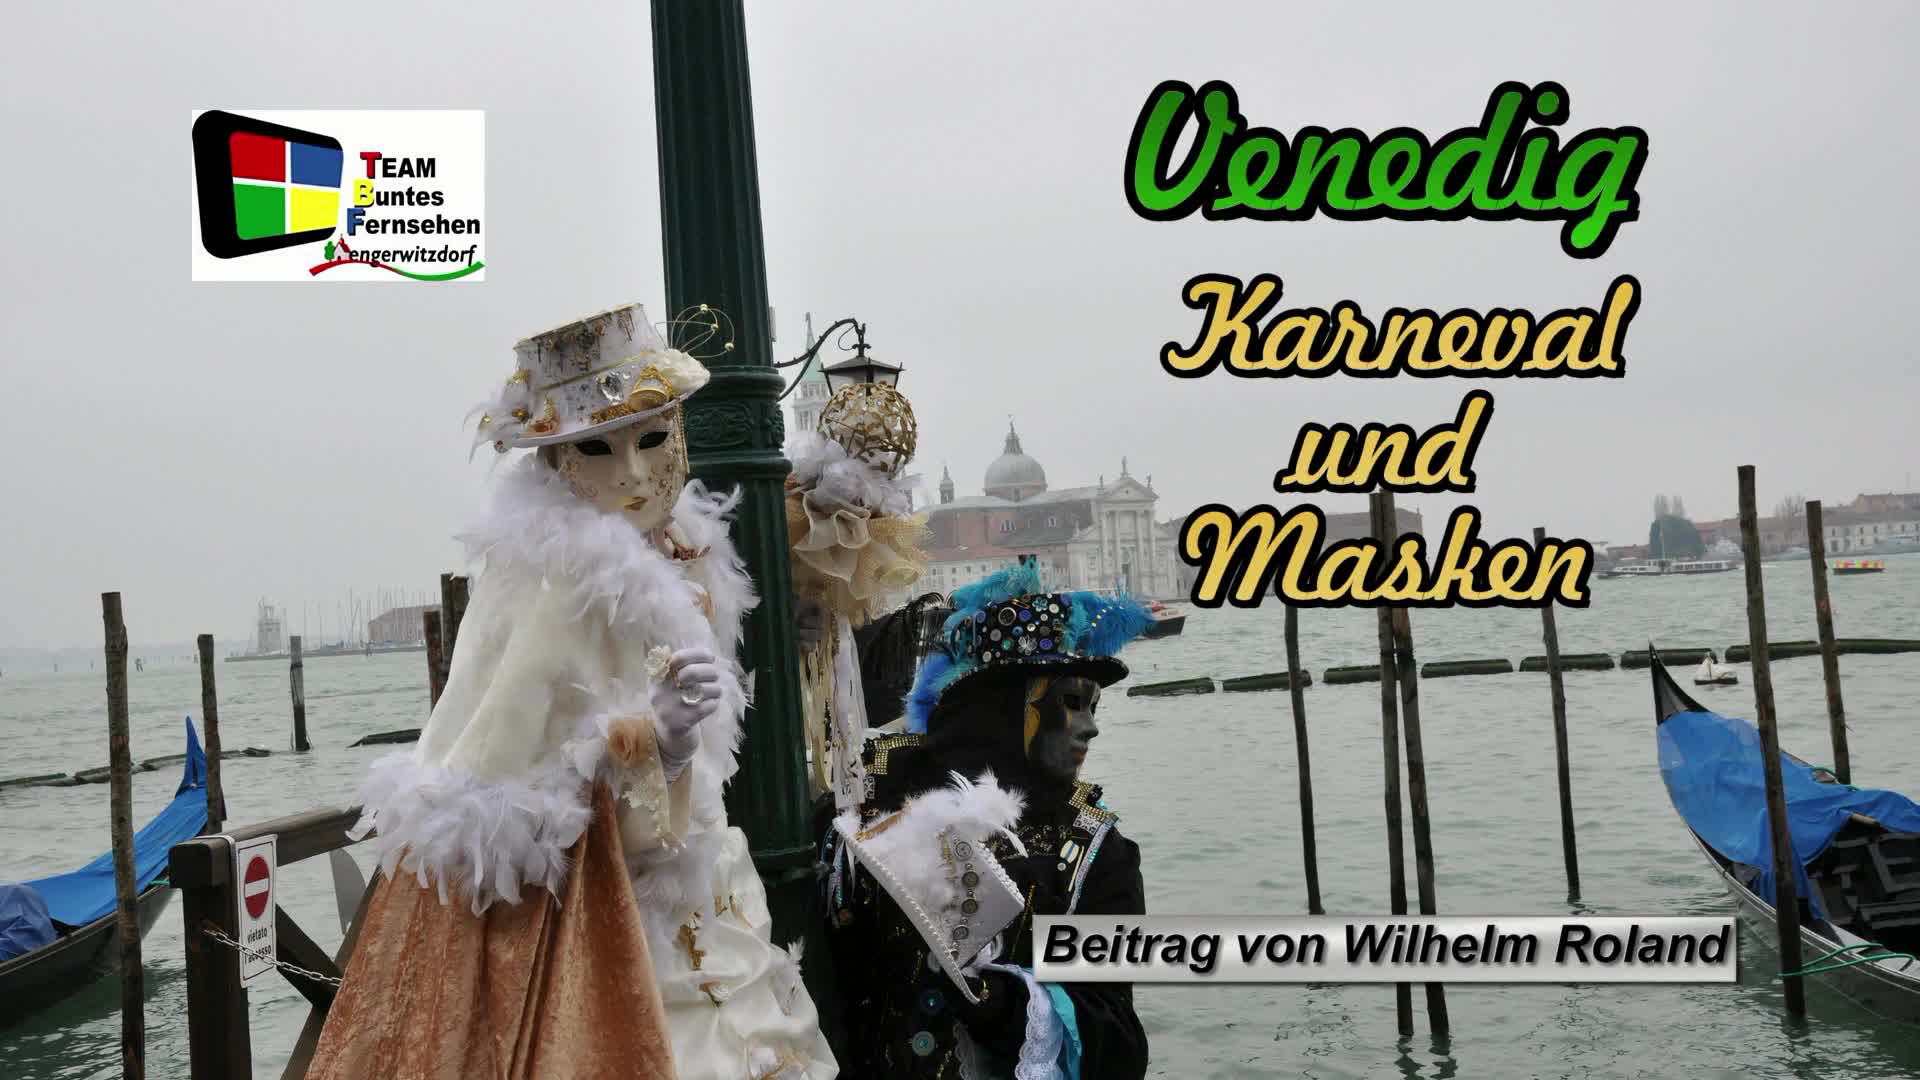 Venedig-Karneval und Masken